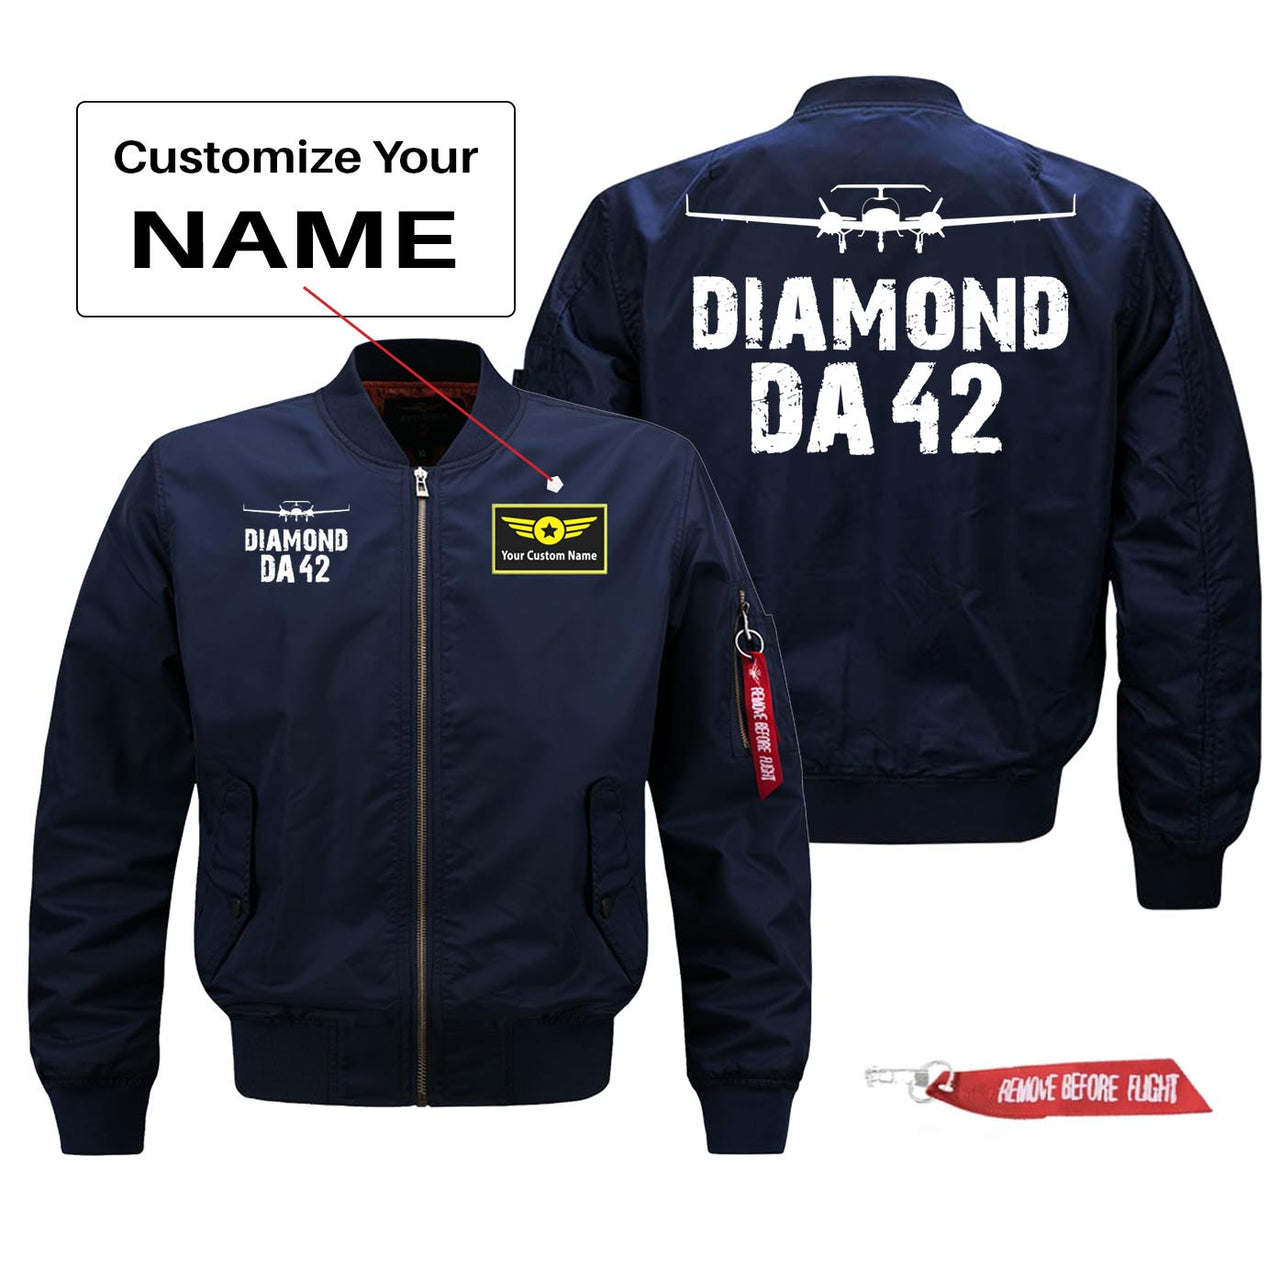 Diamond DA42 Silhouette & Designed Pilot Jackets (Customizable)